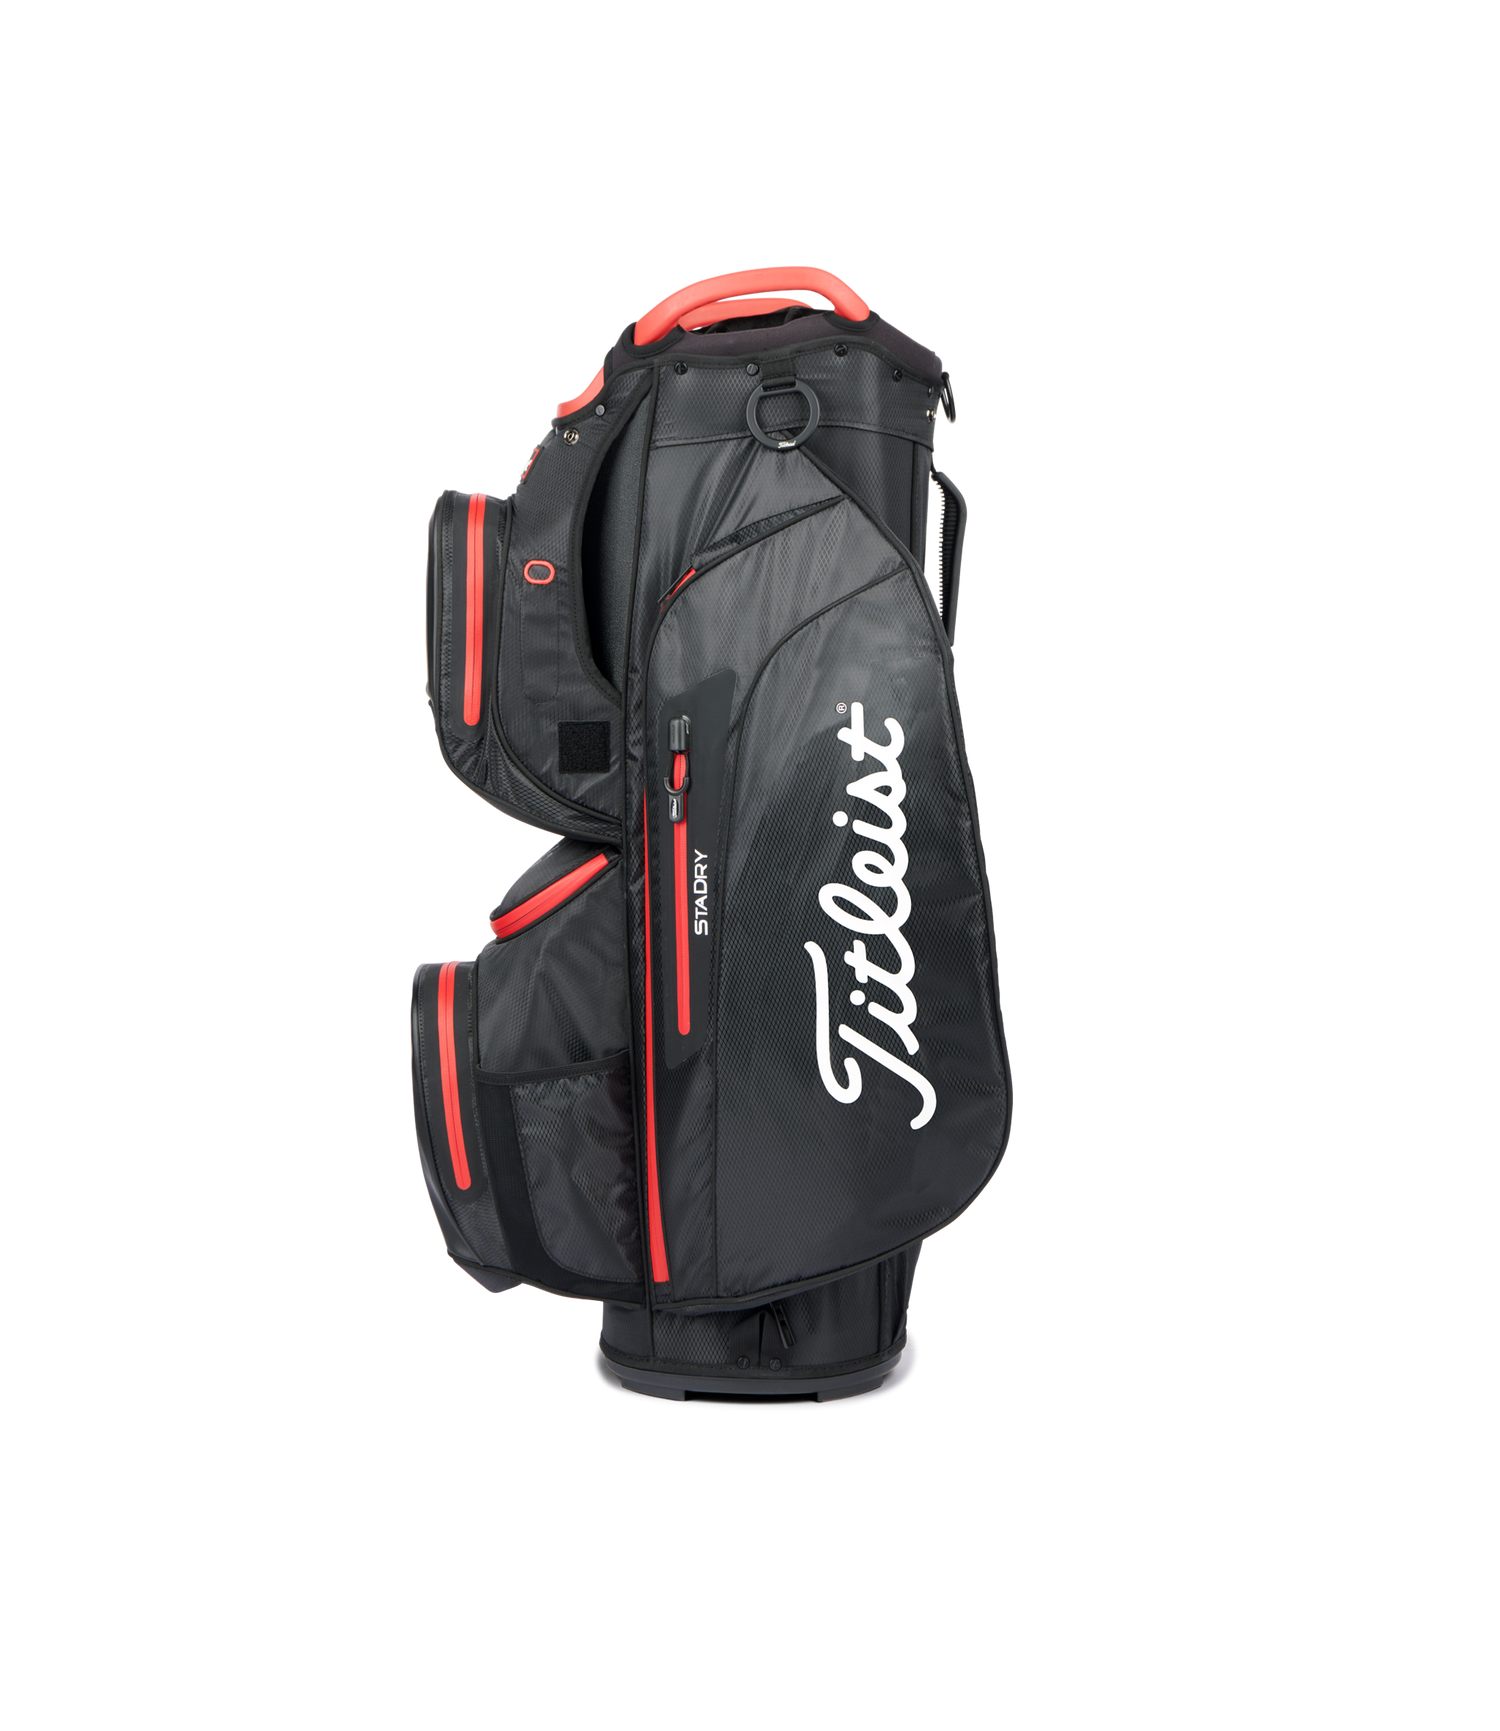 Titleist Golf Cart 15 StaDry Cart Bag   